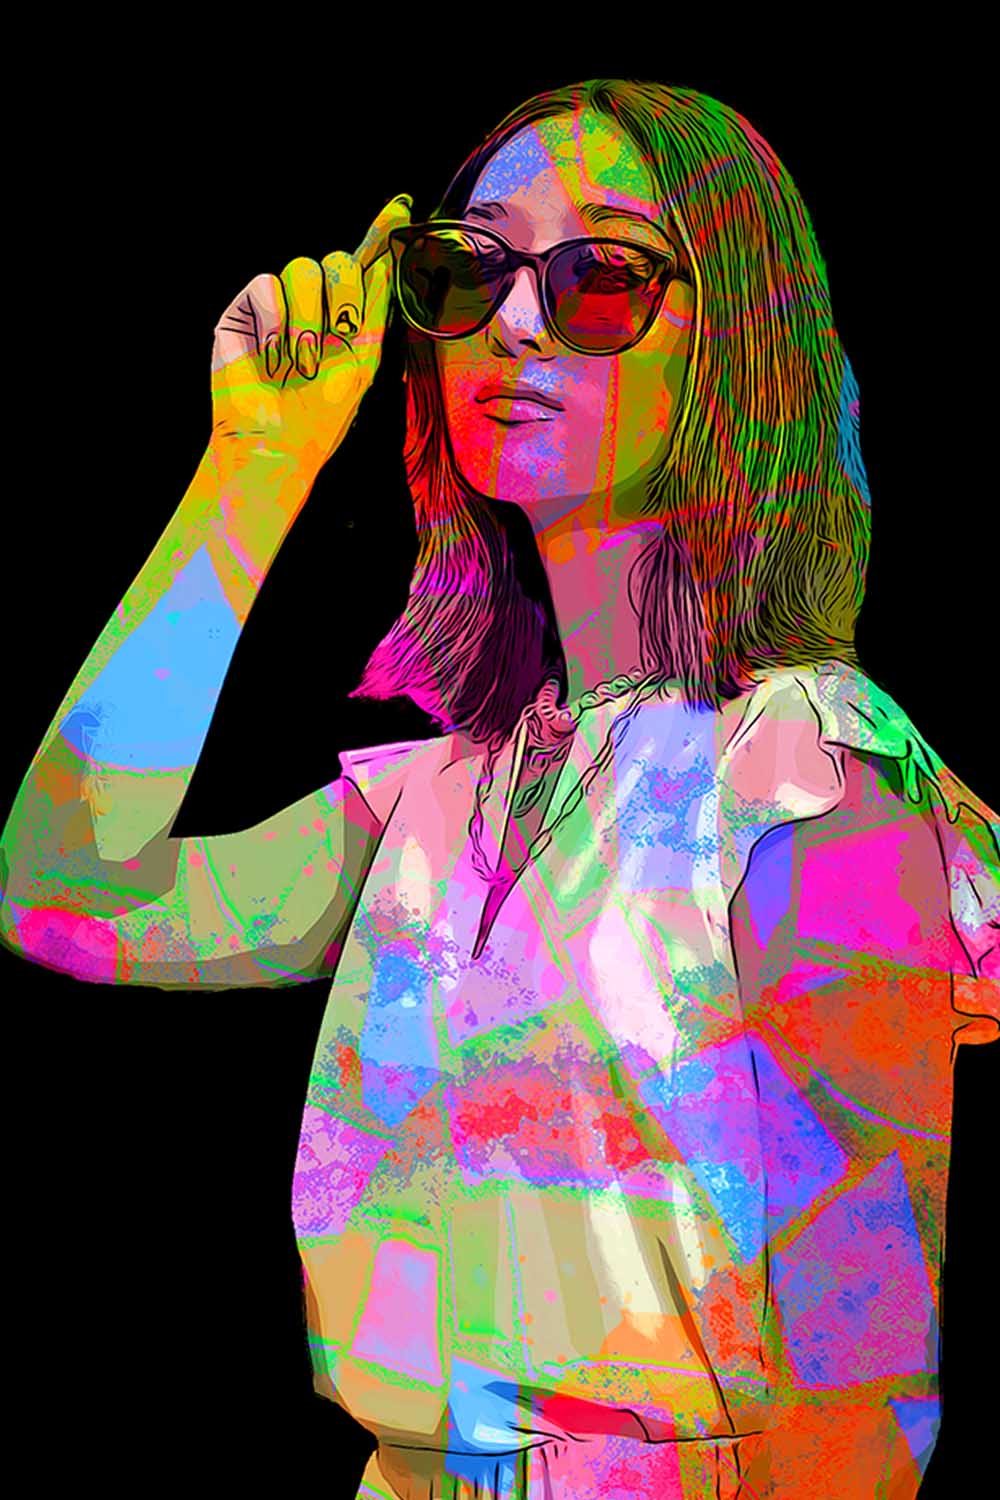 Colorful Pop Art Photoshop Action pinterest preview image.